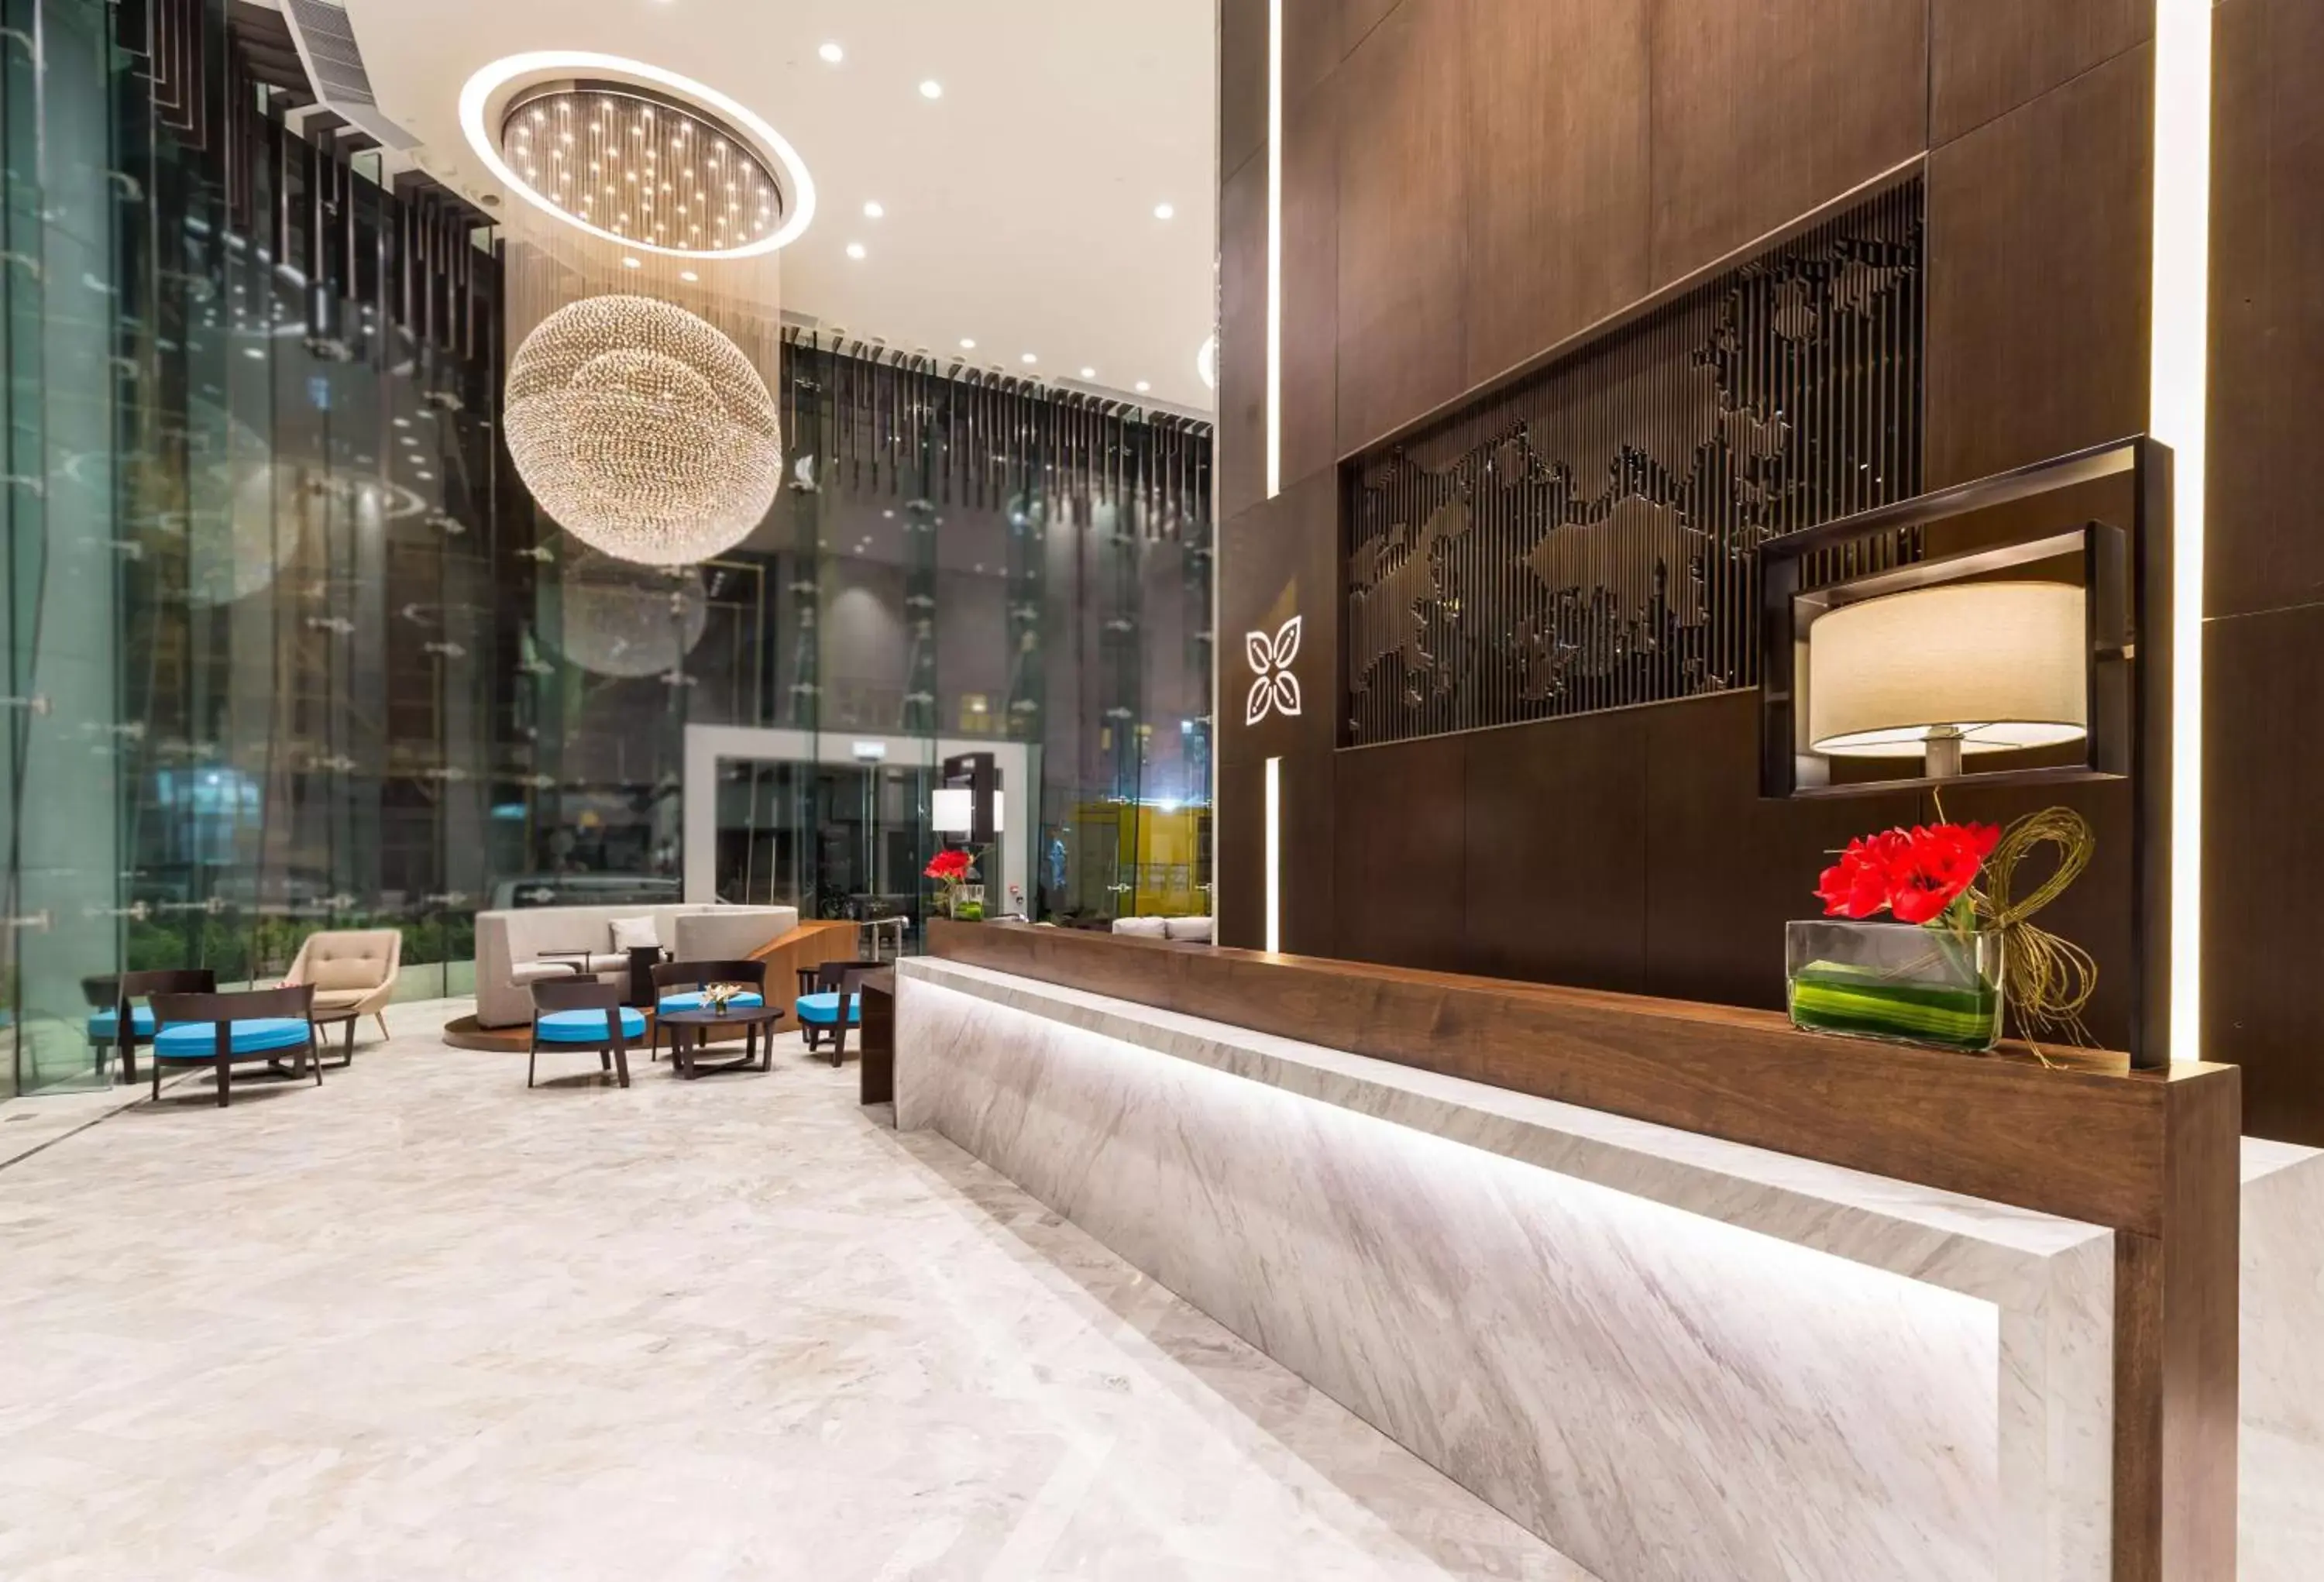 Lobby or reception, Lobby/Reception in Hilton Garden Inn Hong Kong Mongkok